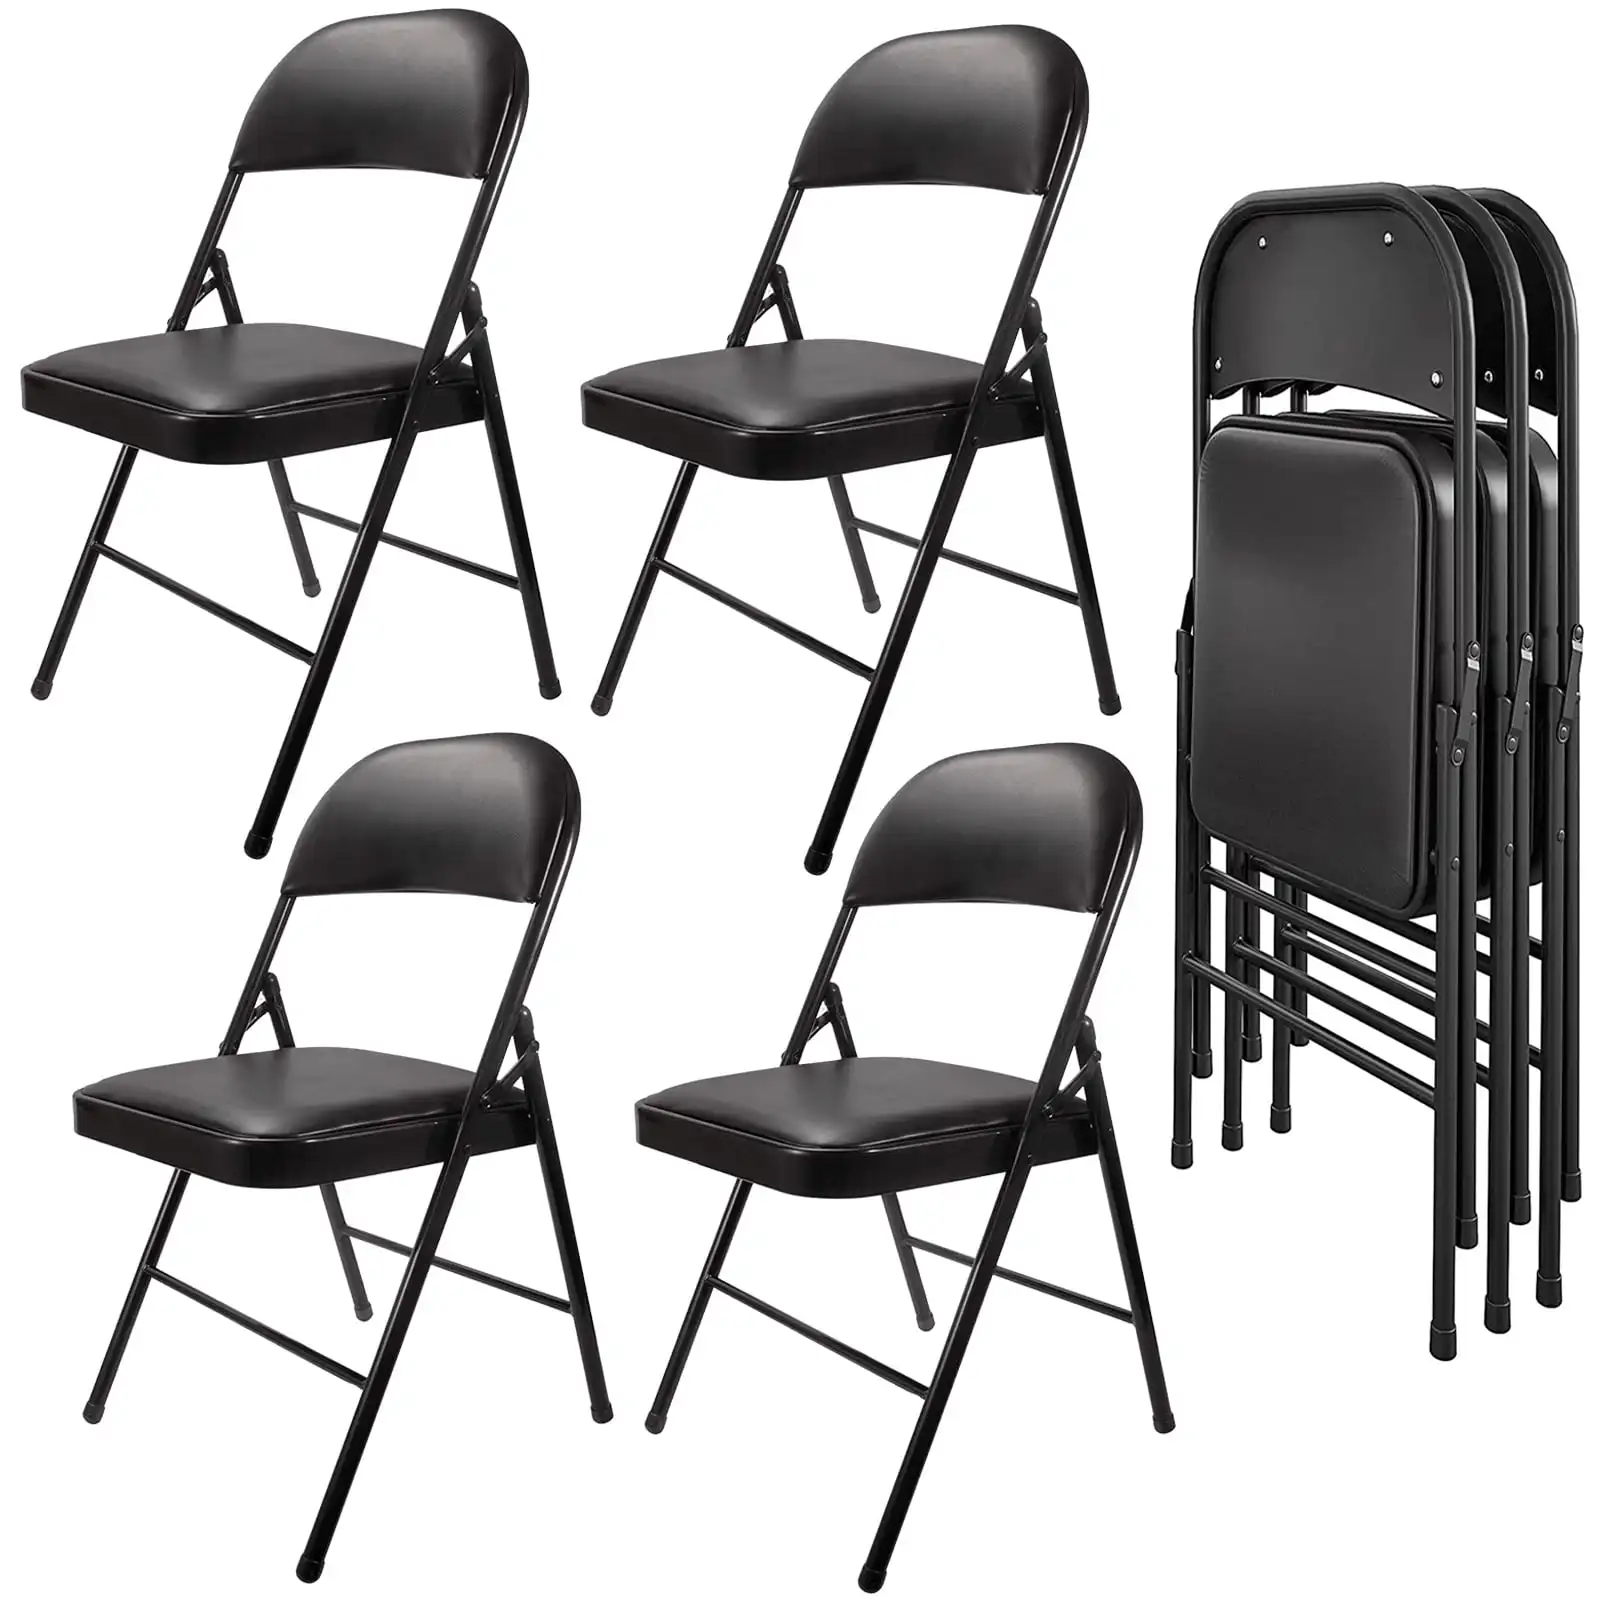 

Металлические складные стулья с подкладкой, 4 шт. в упаковке, черного цвета